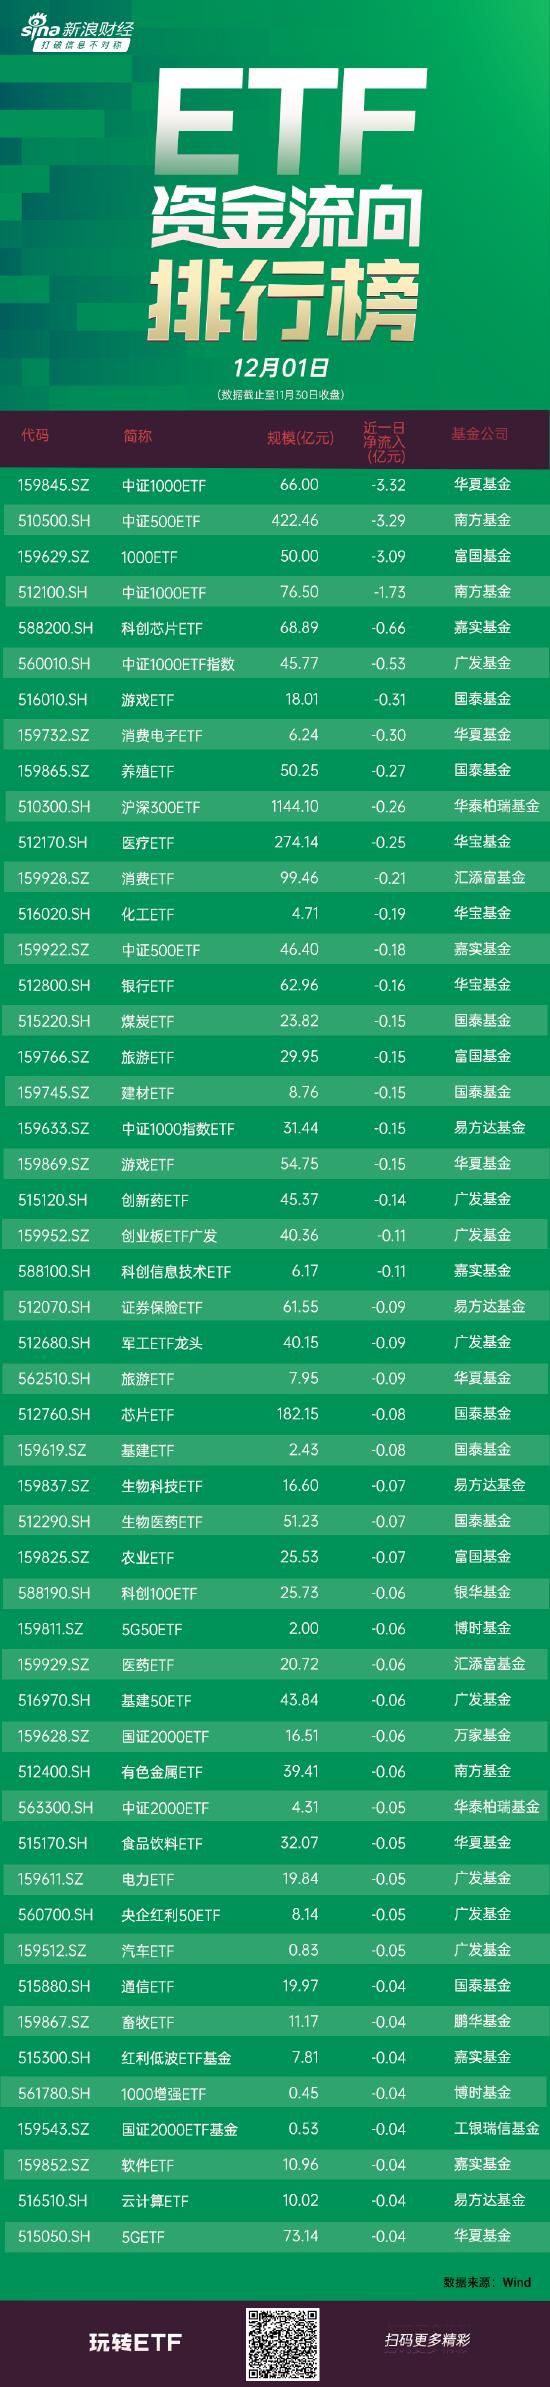 ETF资金流向：11月30日 华夏中证100ETF获净赎回3.32亿元，南方中证500ETF获净赎回3.29亿元（附图）